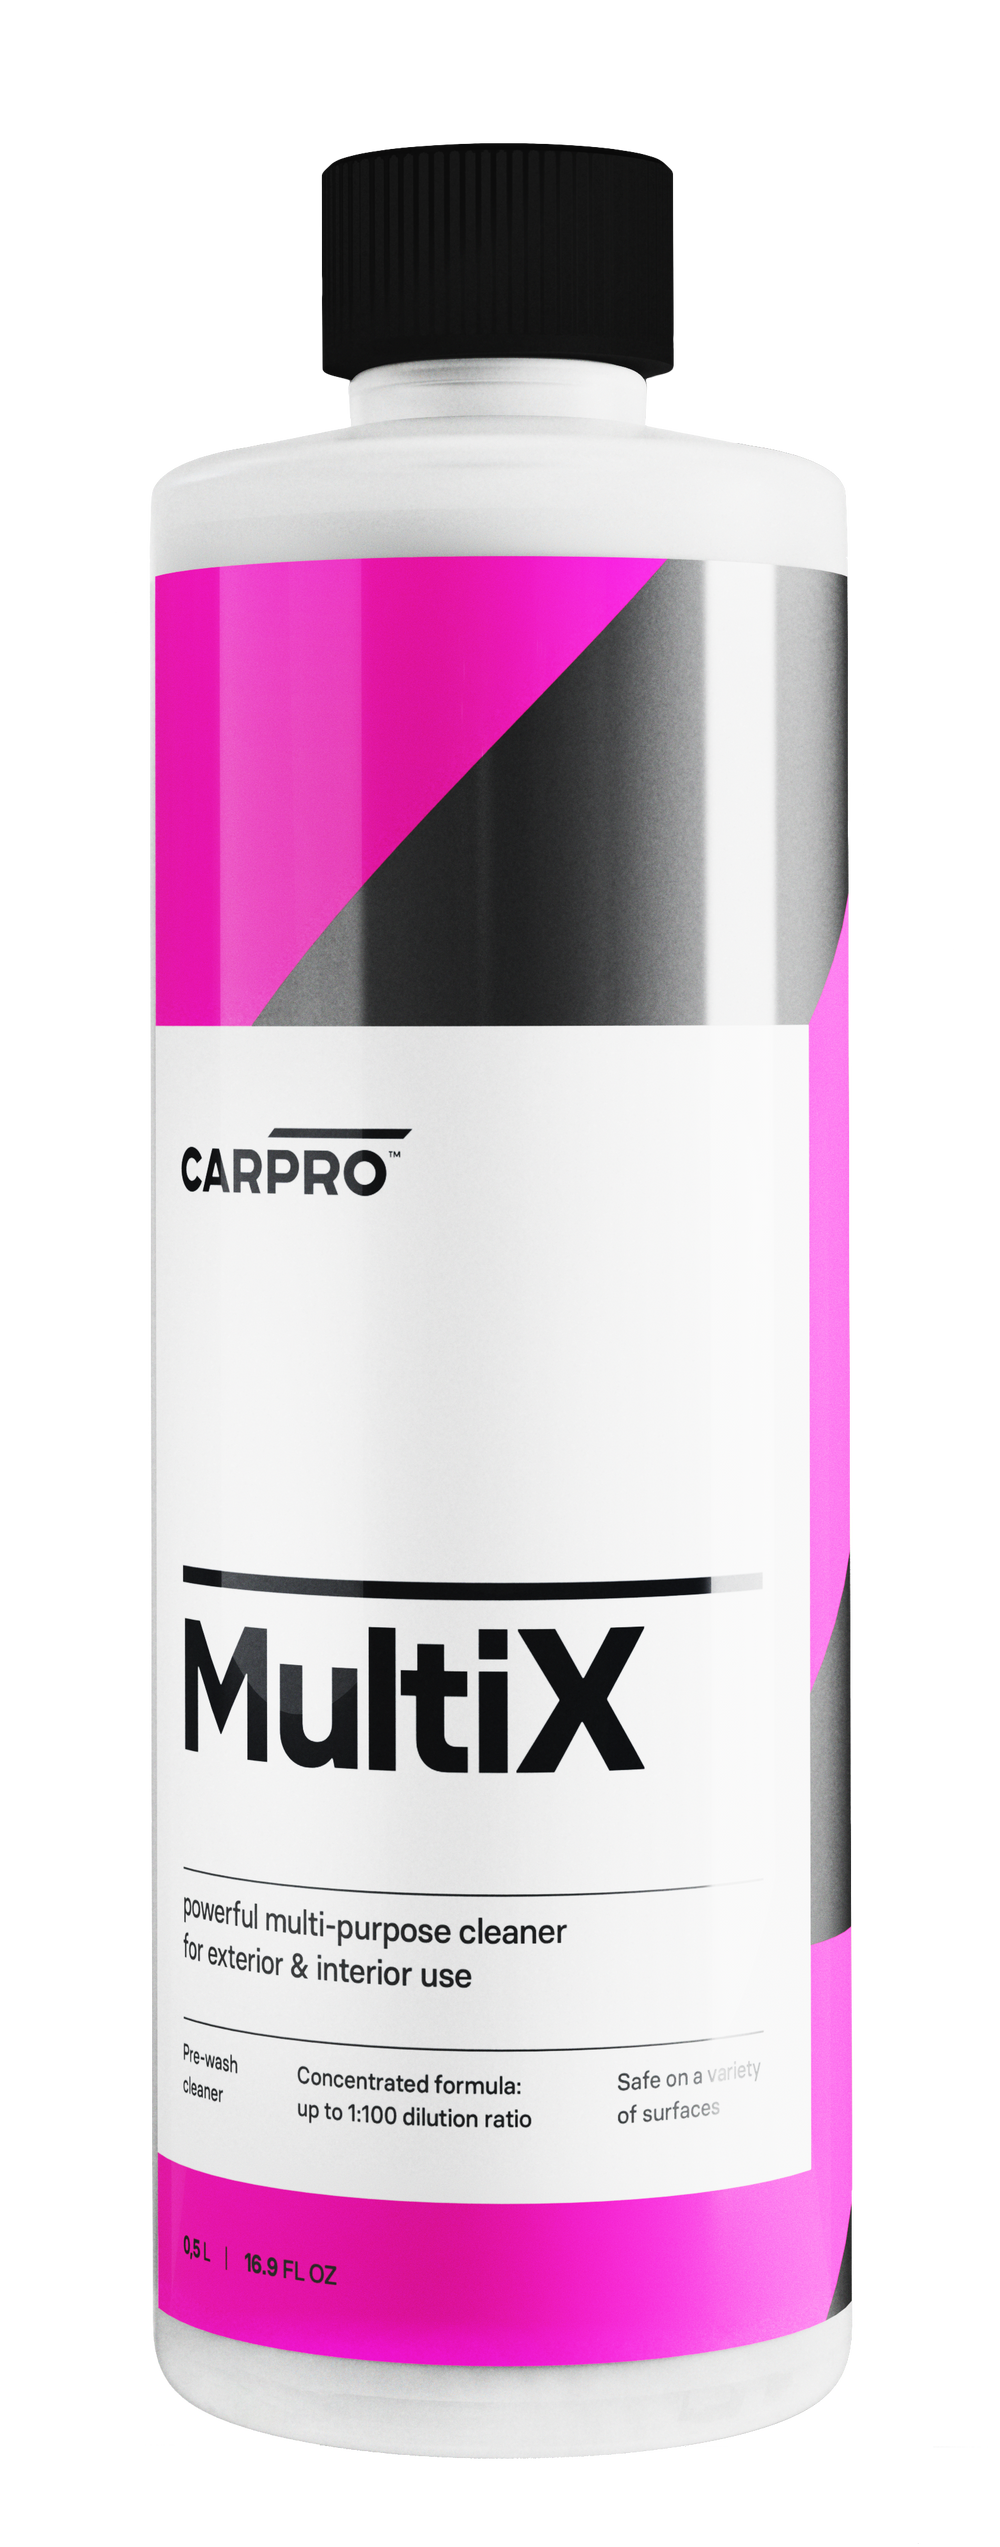 CARPRO MultiX 500ML - Multi-purpose cleaner